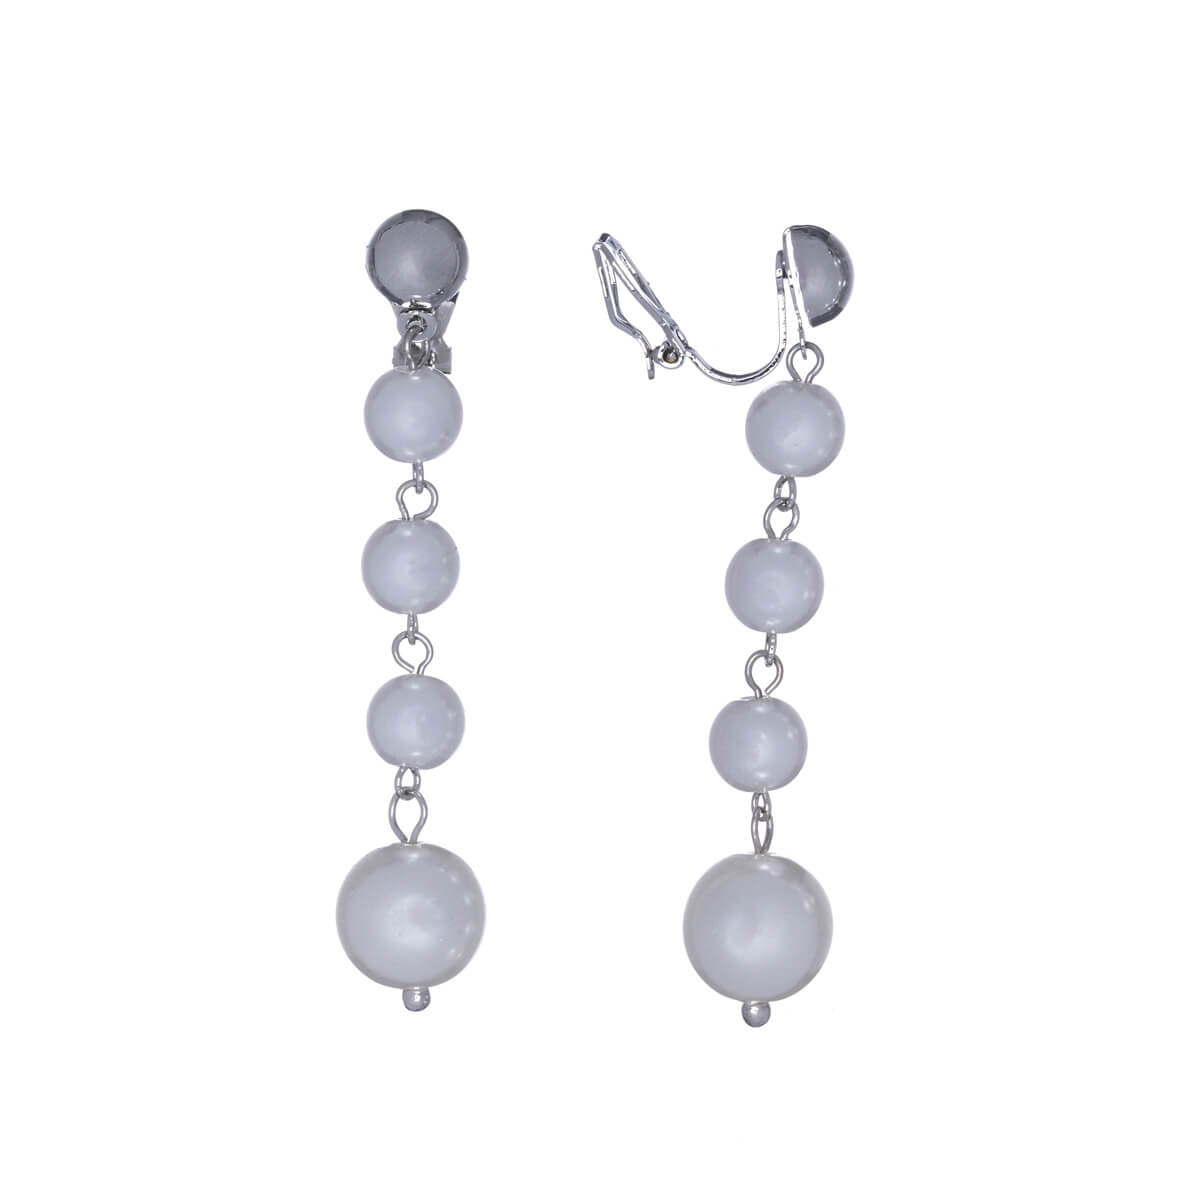 Hanging pearl clip earrings